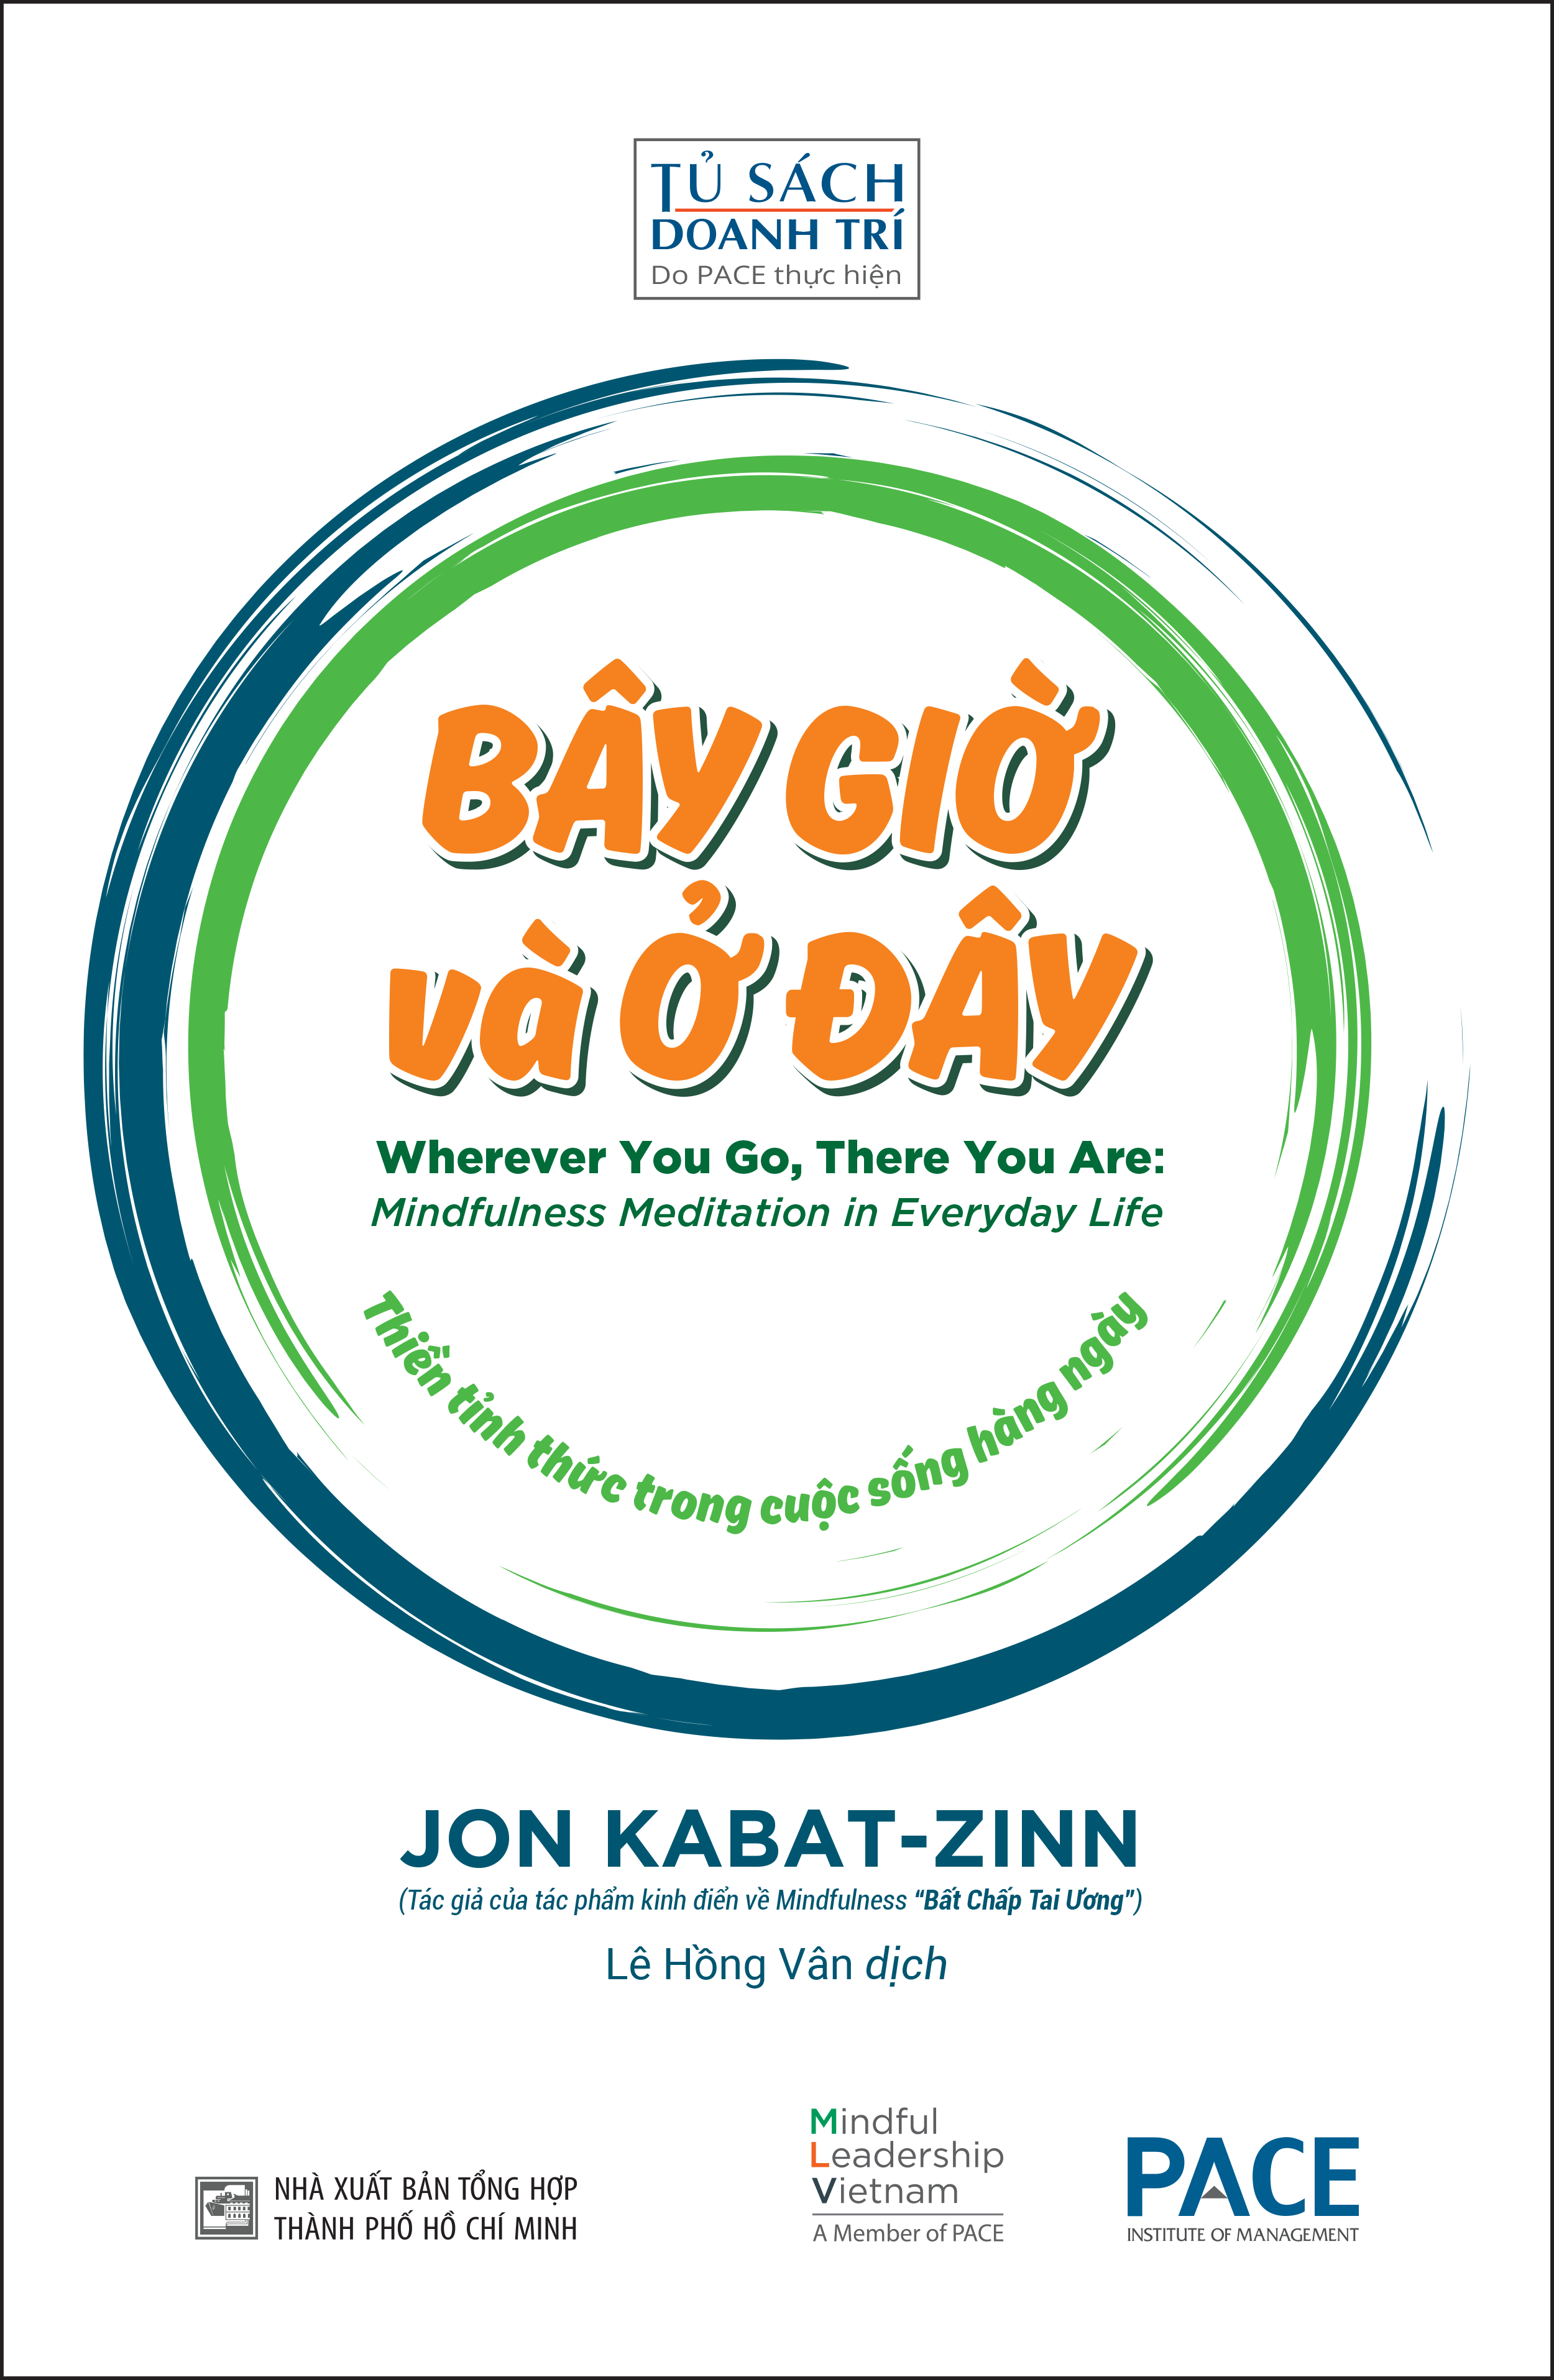 BÂY GIỜ VÀ Ở ĐÂY (There You Are: Mindfulness Meditation in Everyday Life) - Jon Kabat-Zinn - Lê Hồng Vân dịch